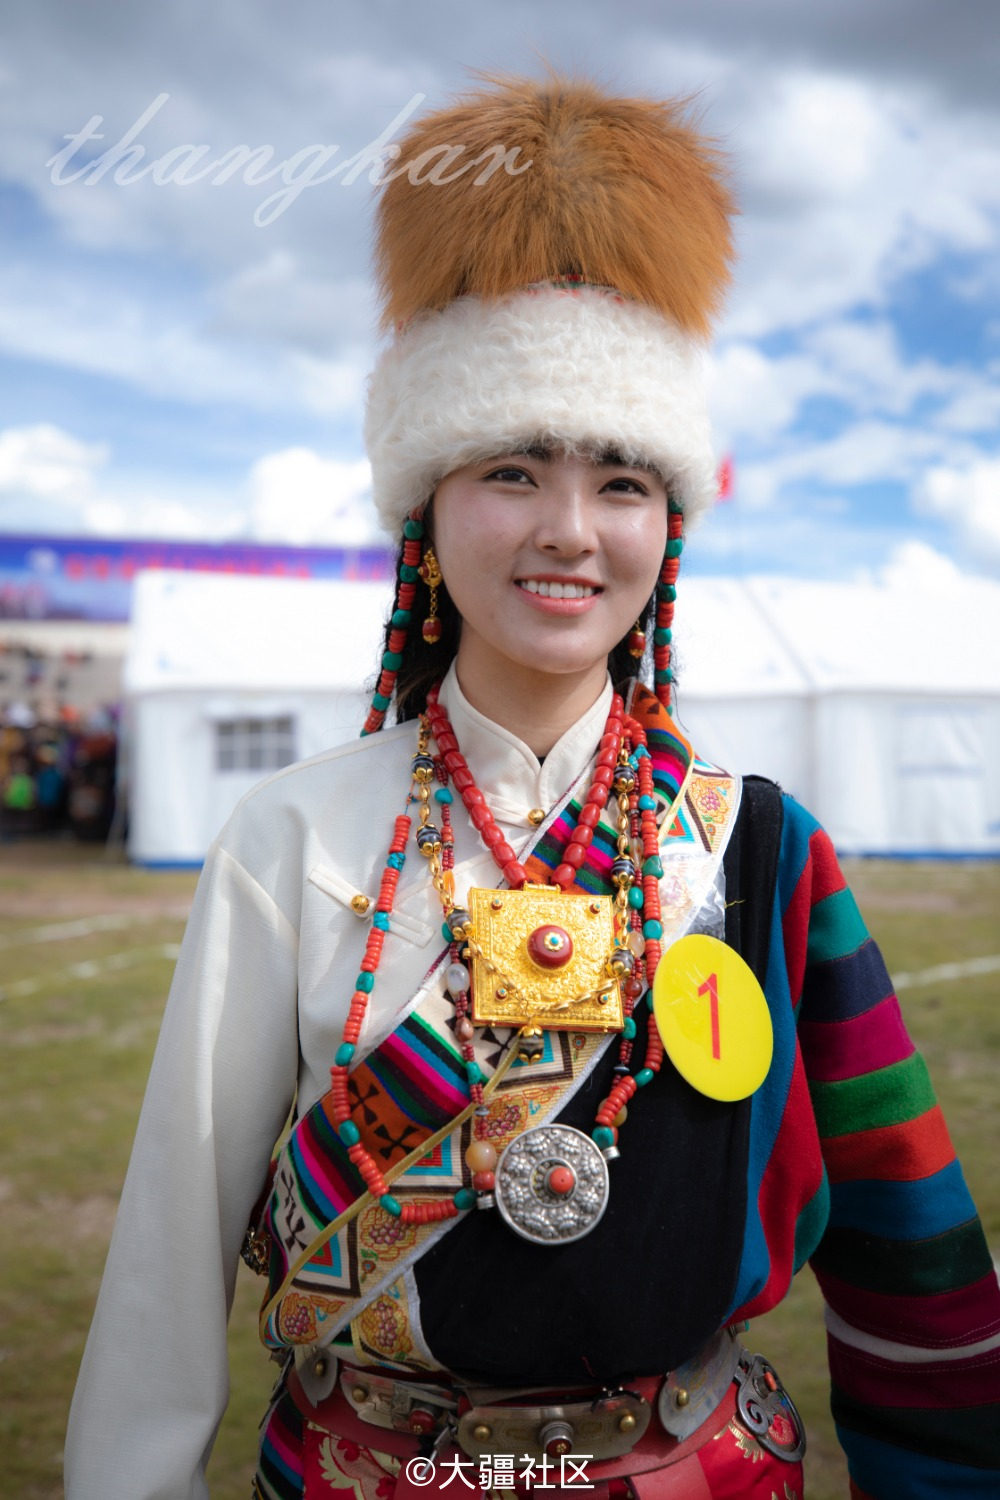 西藏安多县赛马节(2018年)